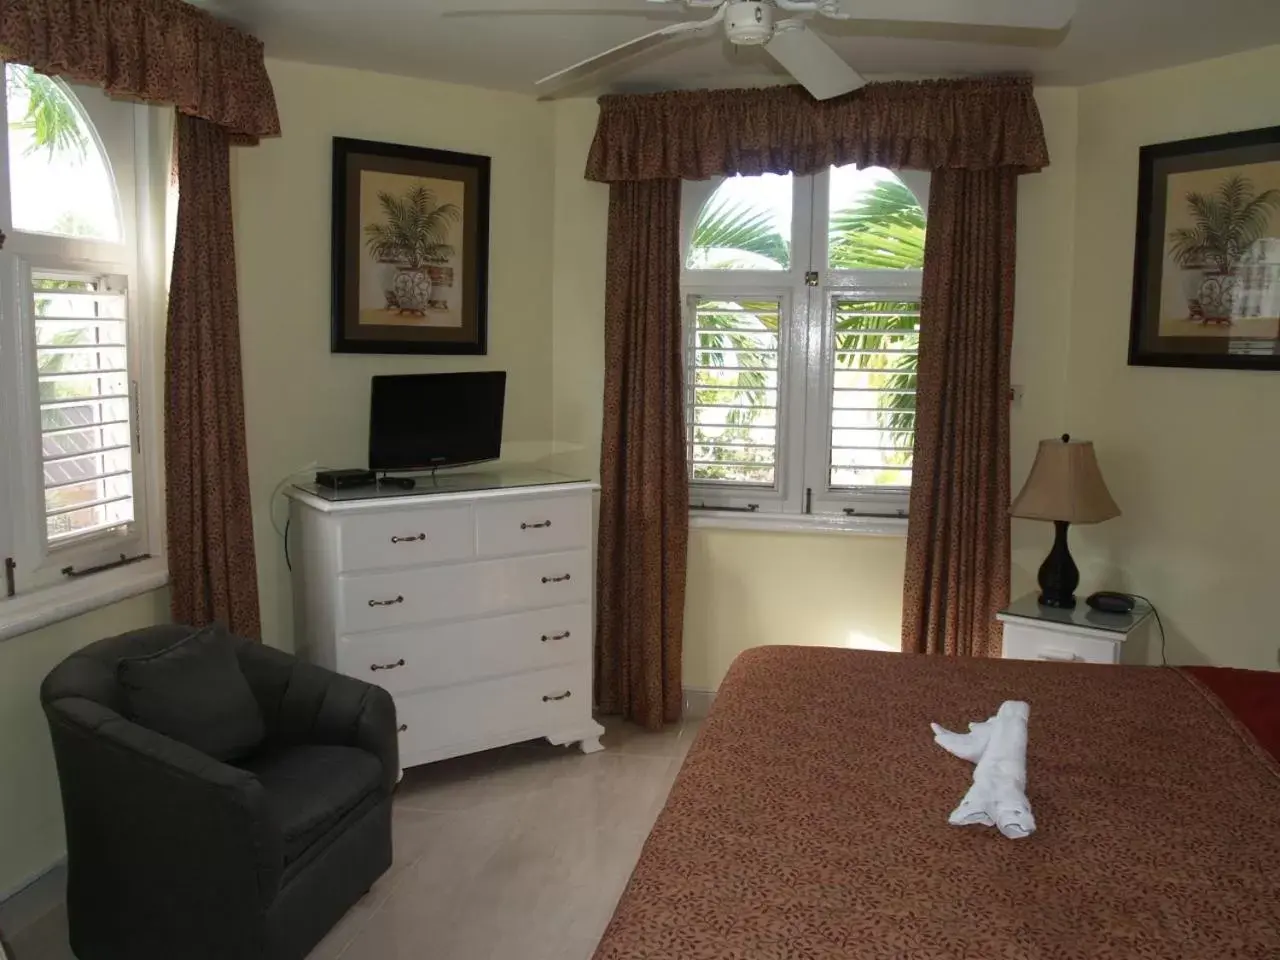 Bedroom, TV/Entertainment Center in Sandcastles Resort, Ocho Rios